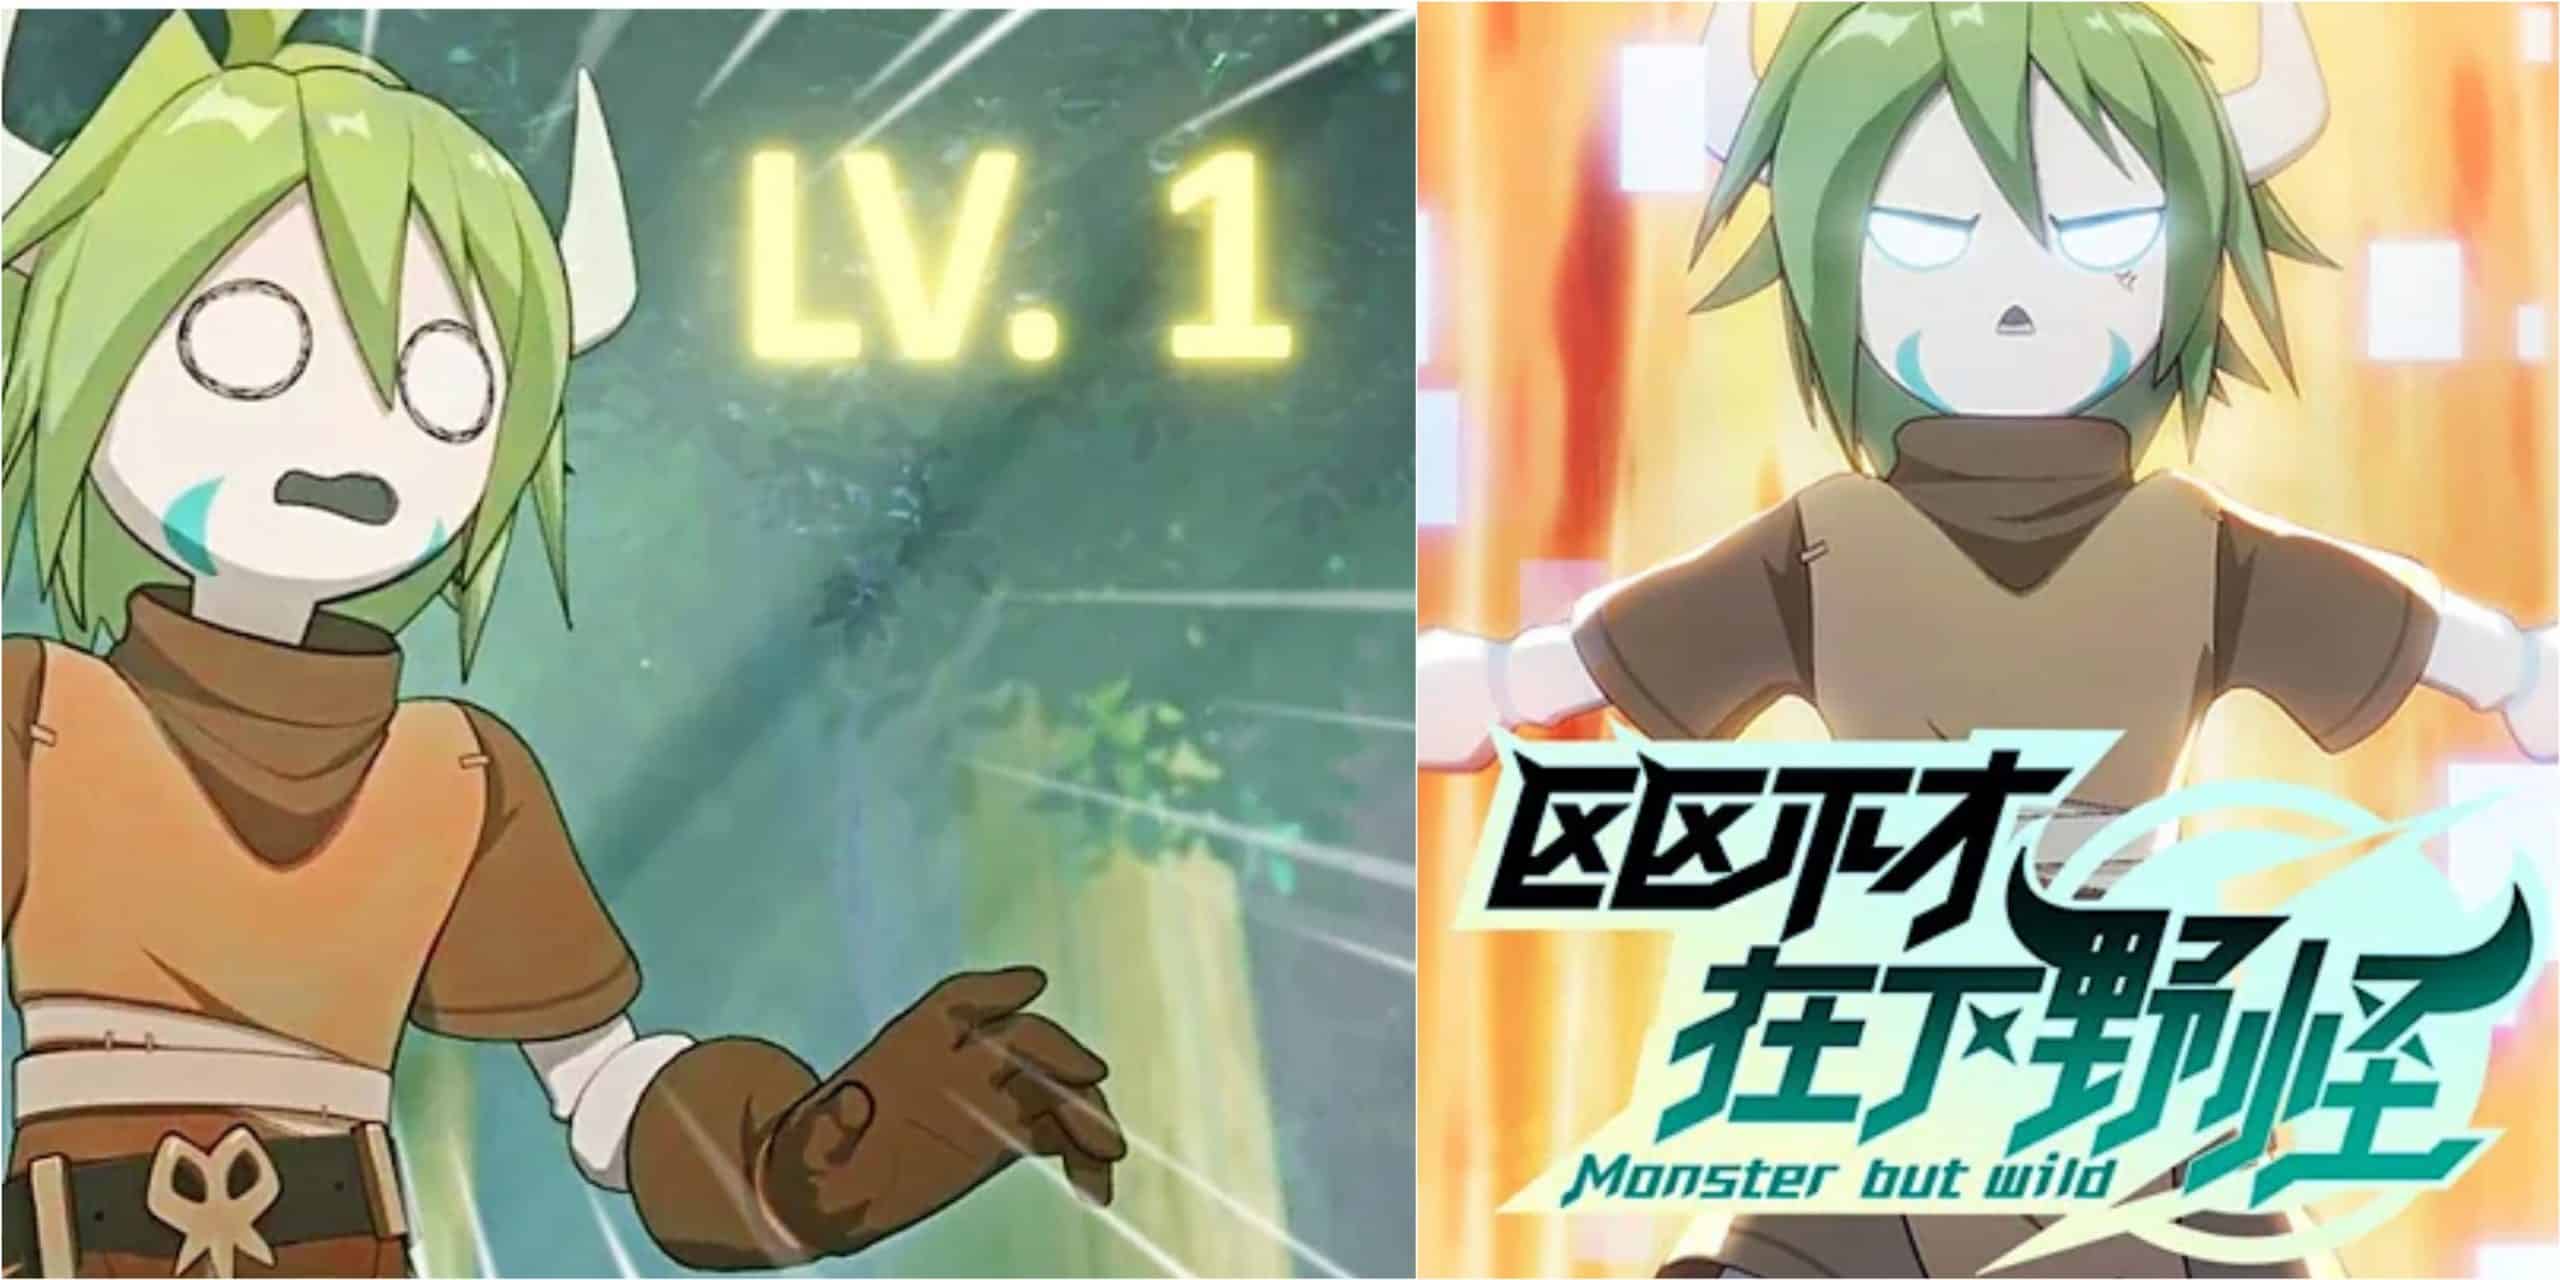 Sinopsis del episodio 9 del anime de acción chino Monster But Wild 